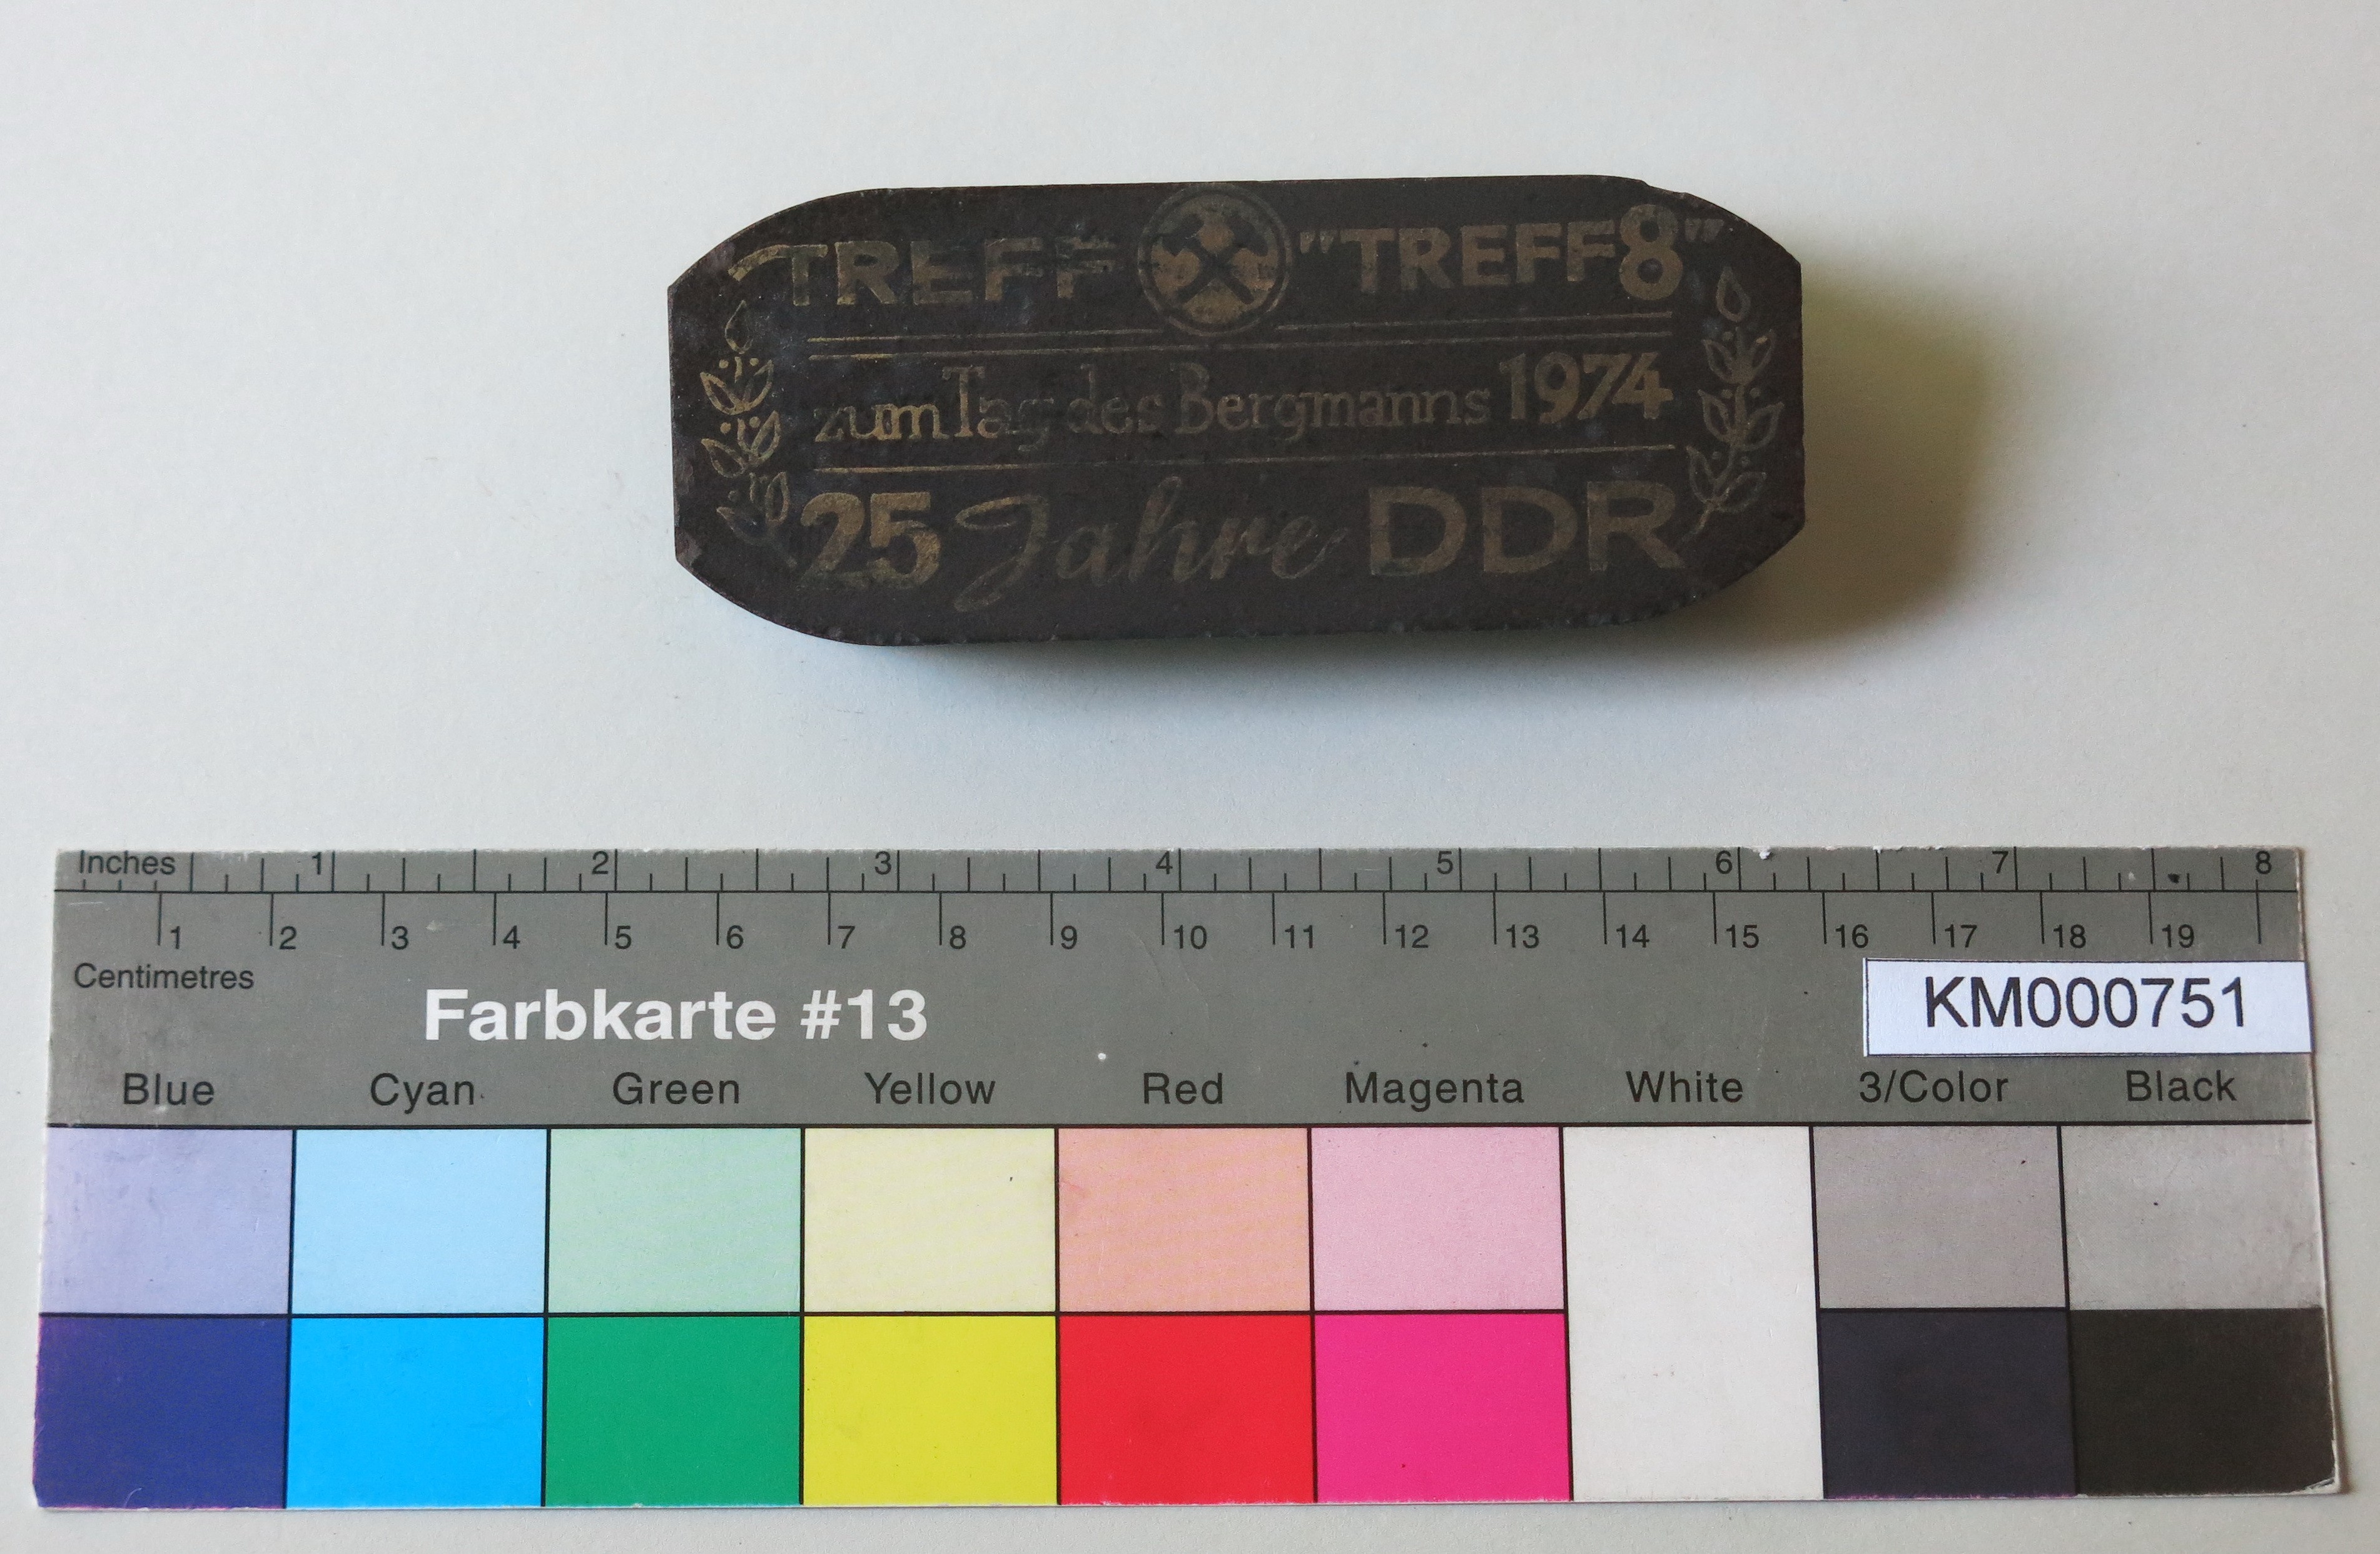 Zierbrikett "TREFF 'TREFF 8' zum Tag des Bergmanns 1974 25 Jahre DDR" (Energiefabrik Knappenrode CC BY-SA)